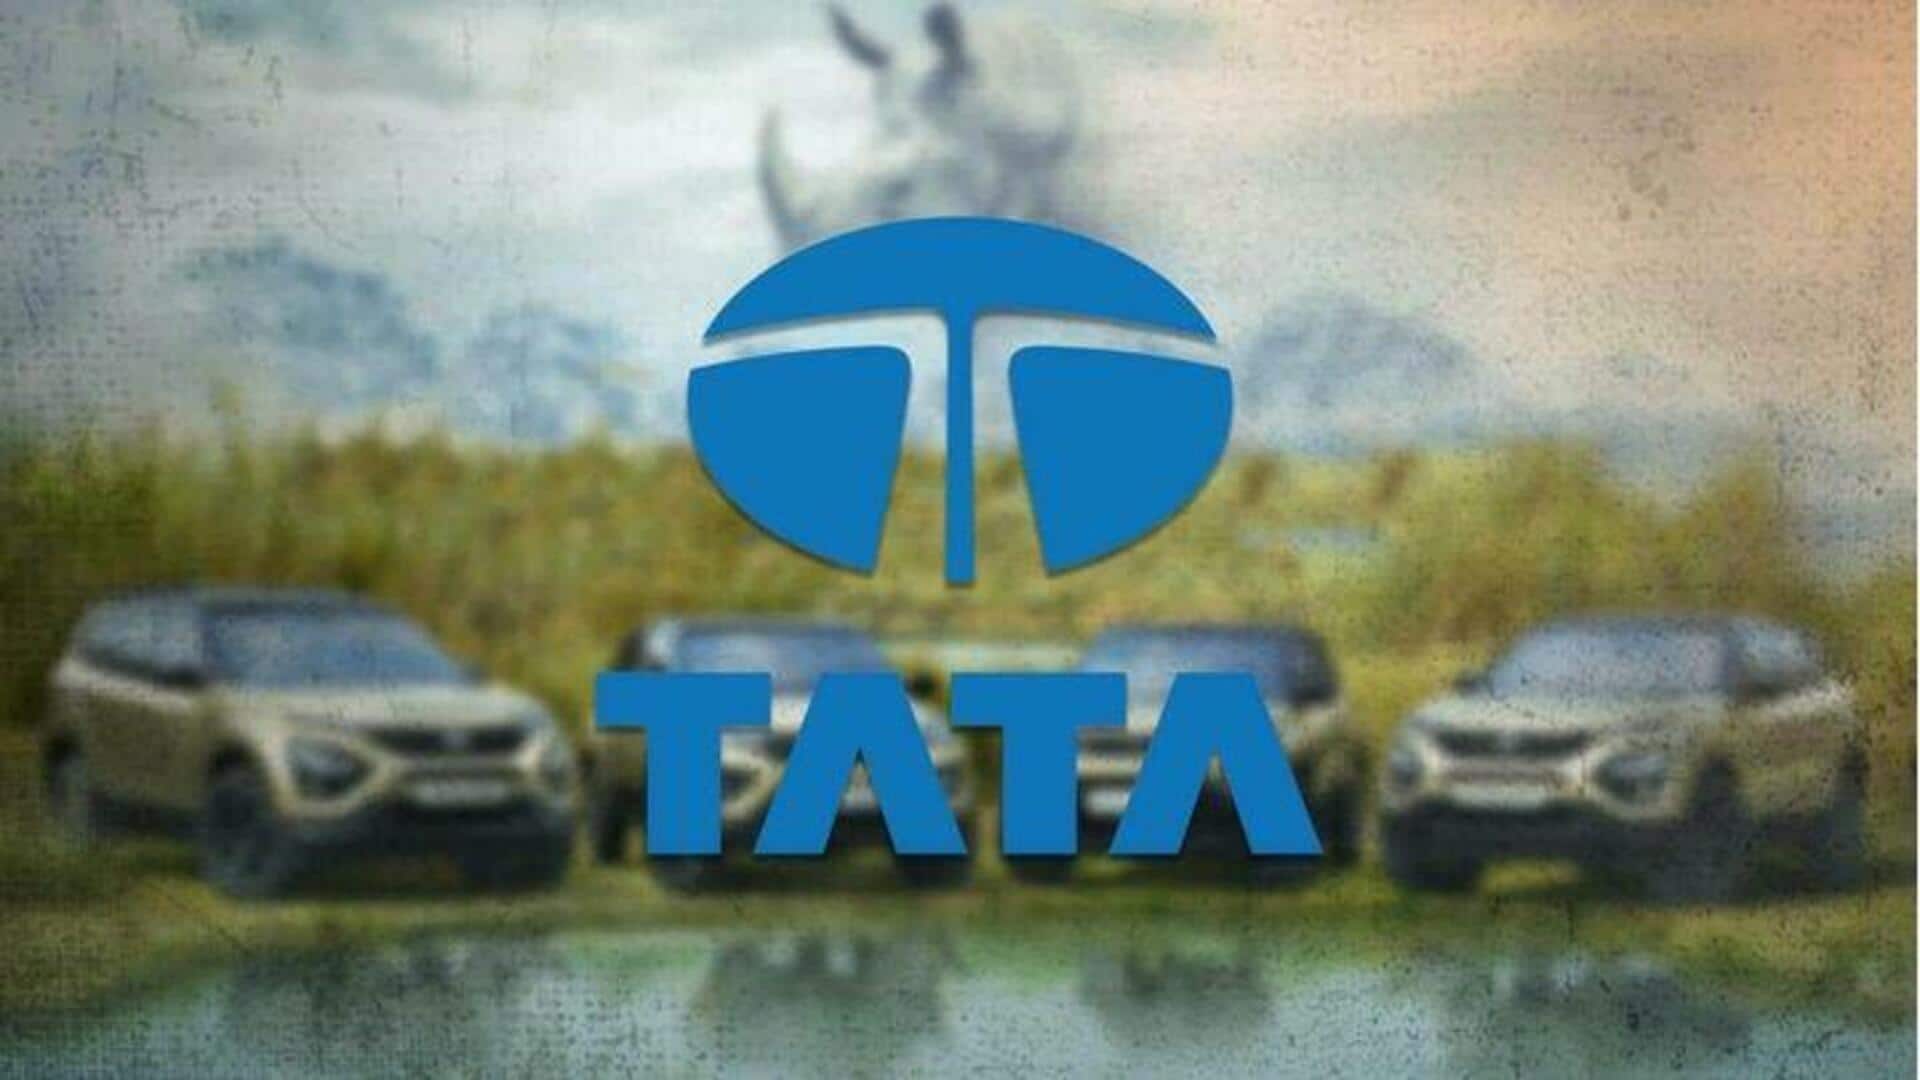 टाटा मोटर्स ने हासिल किया बड़ा मुकाम, देश में बना डाली 50 लाख पैसेंजर गाड़ियां